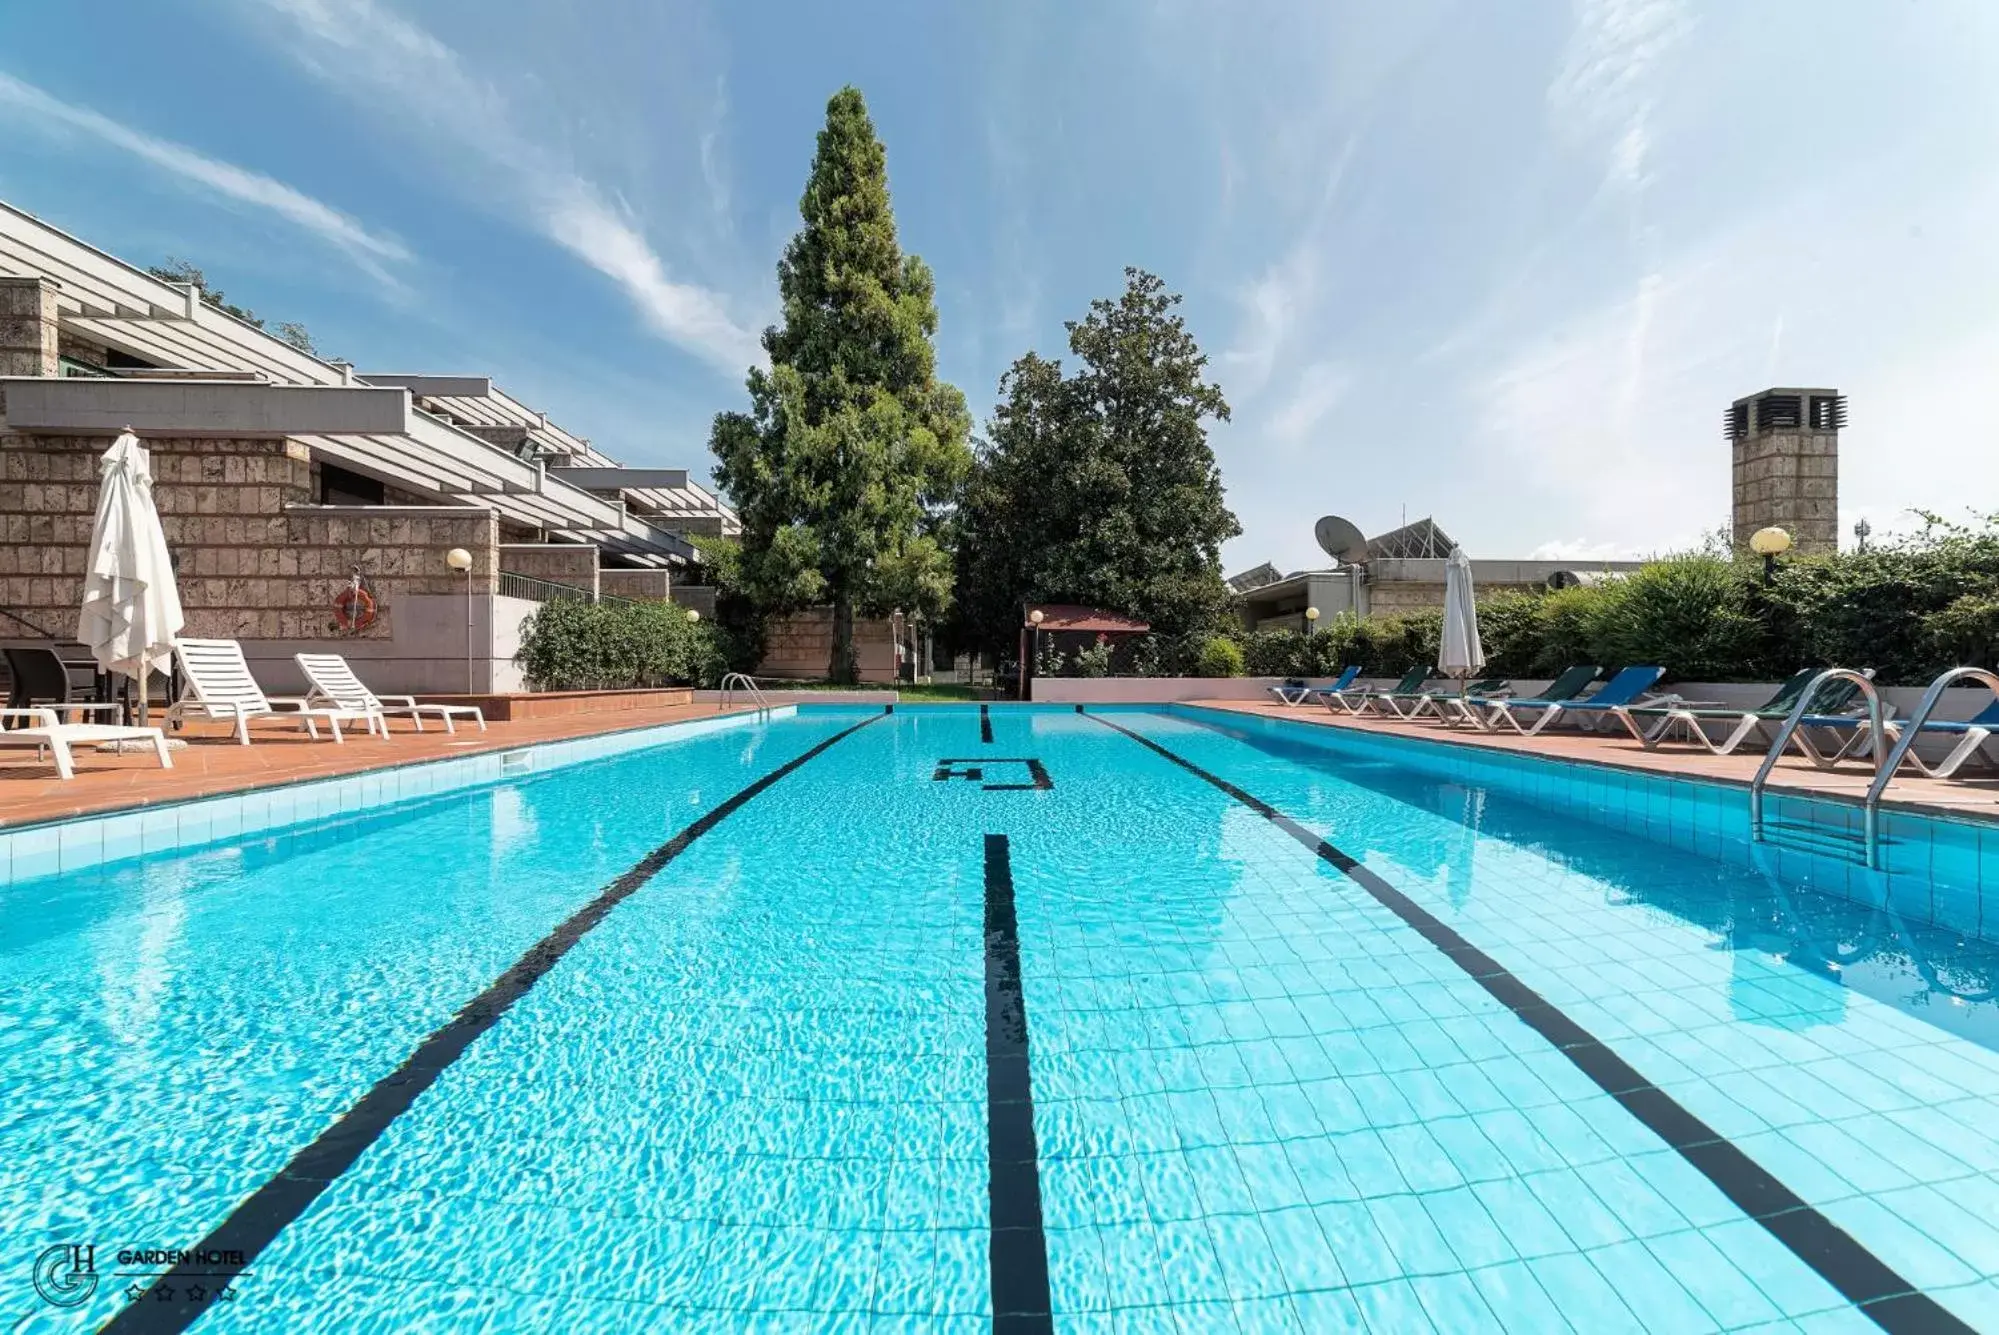 Swimming Pool in Hotel Garden Terni